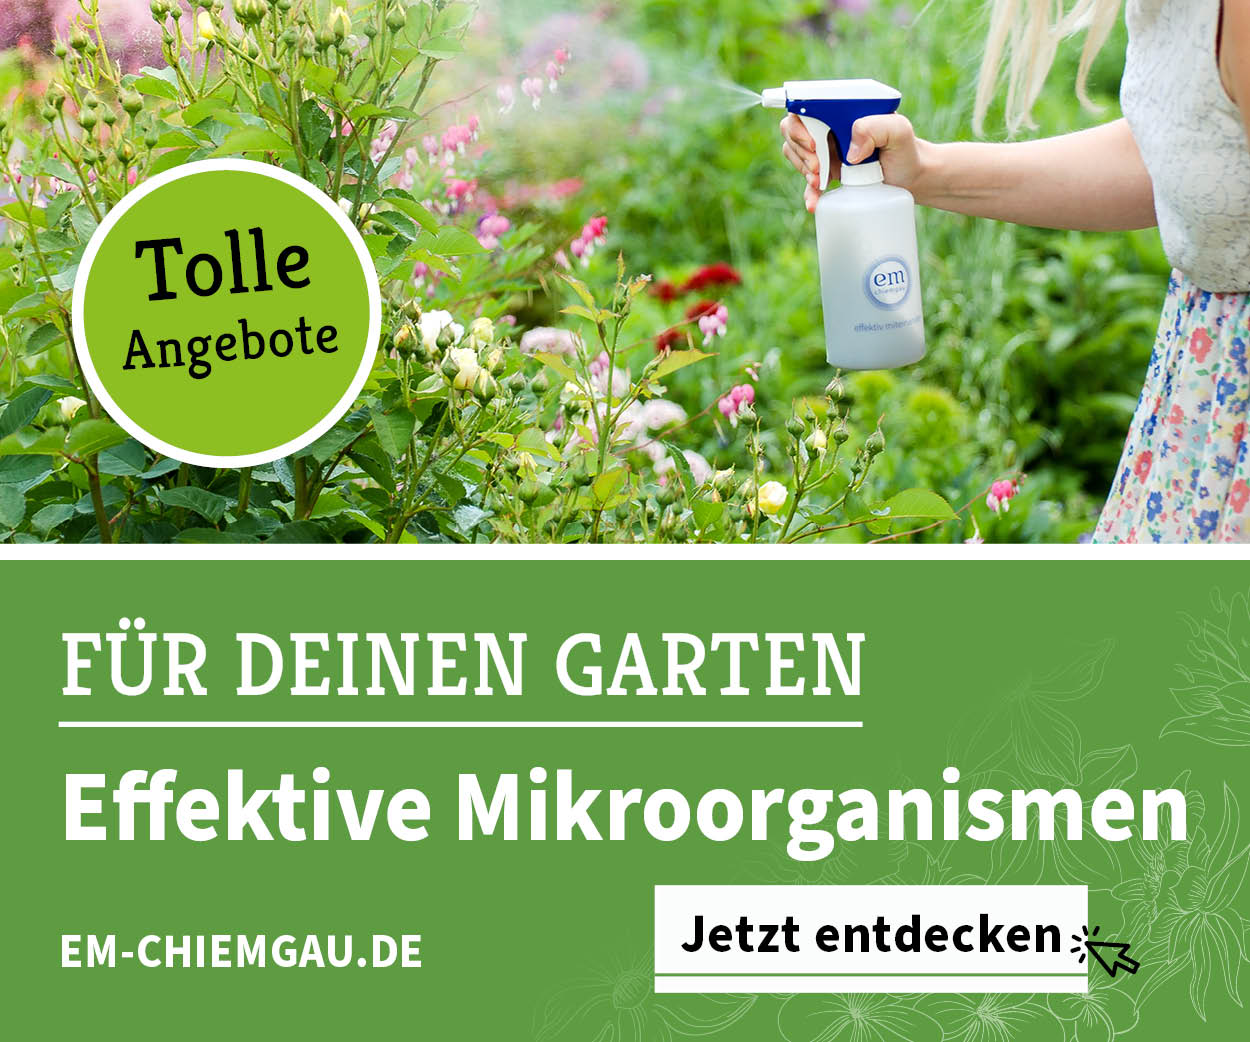 Effektive Mikroorganismen von EM-Chiemgau im Garten nutzen